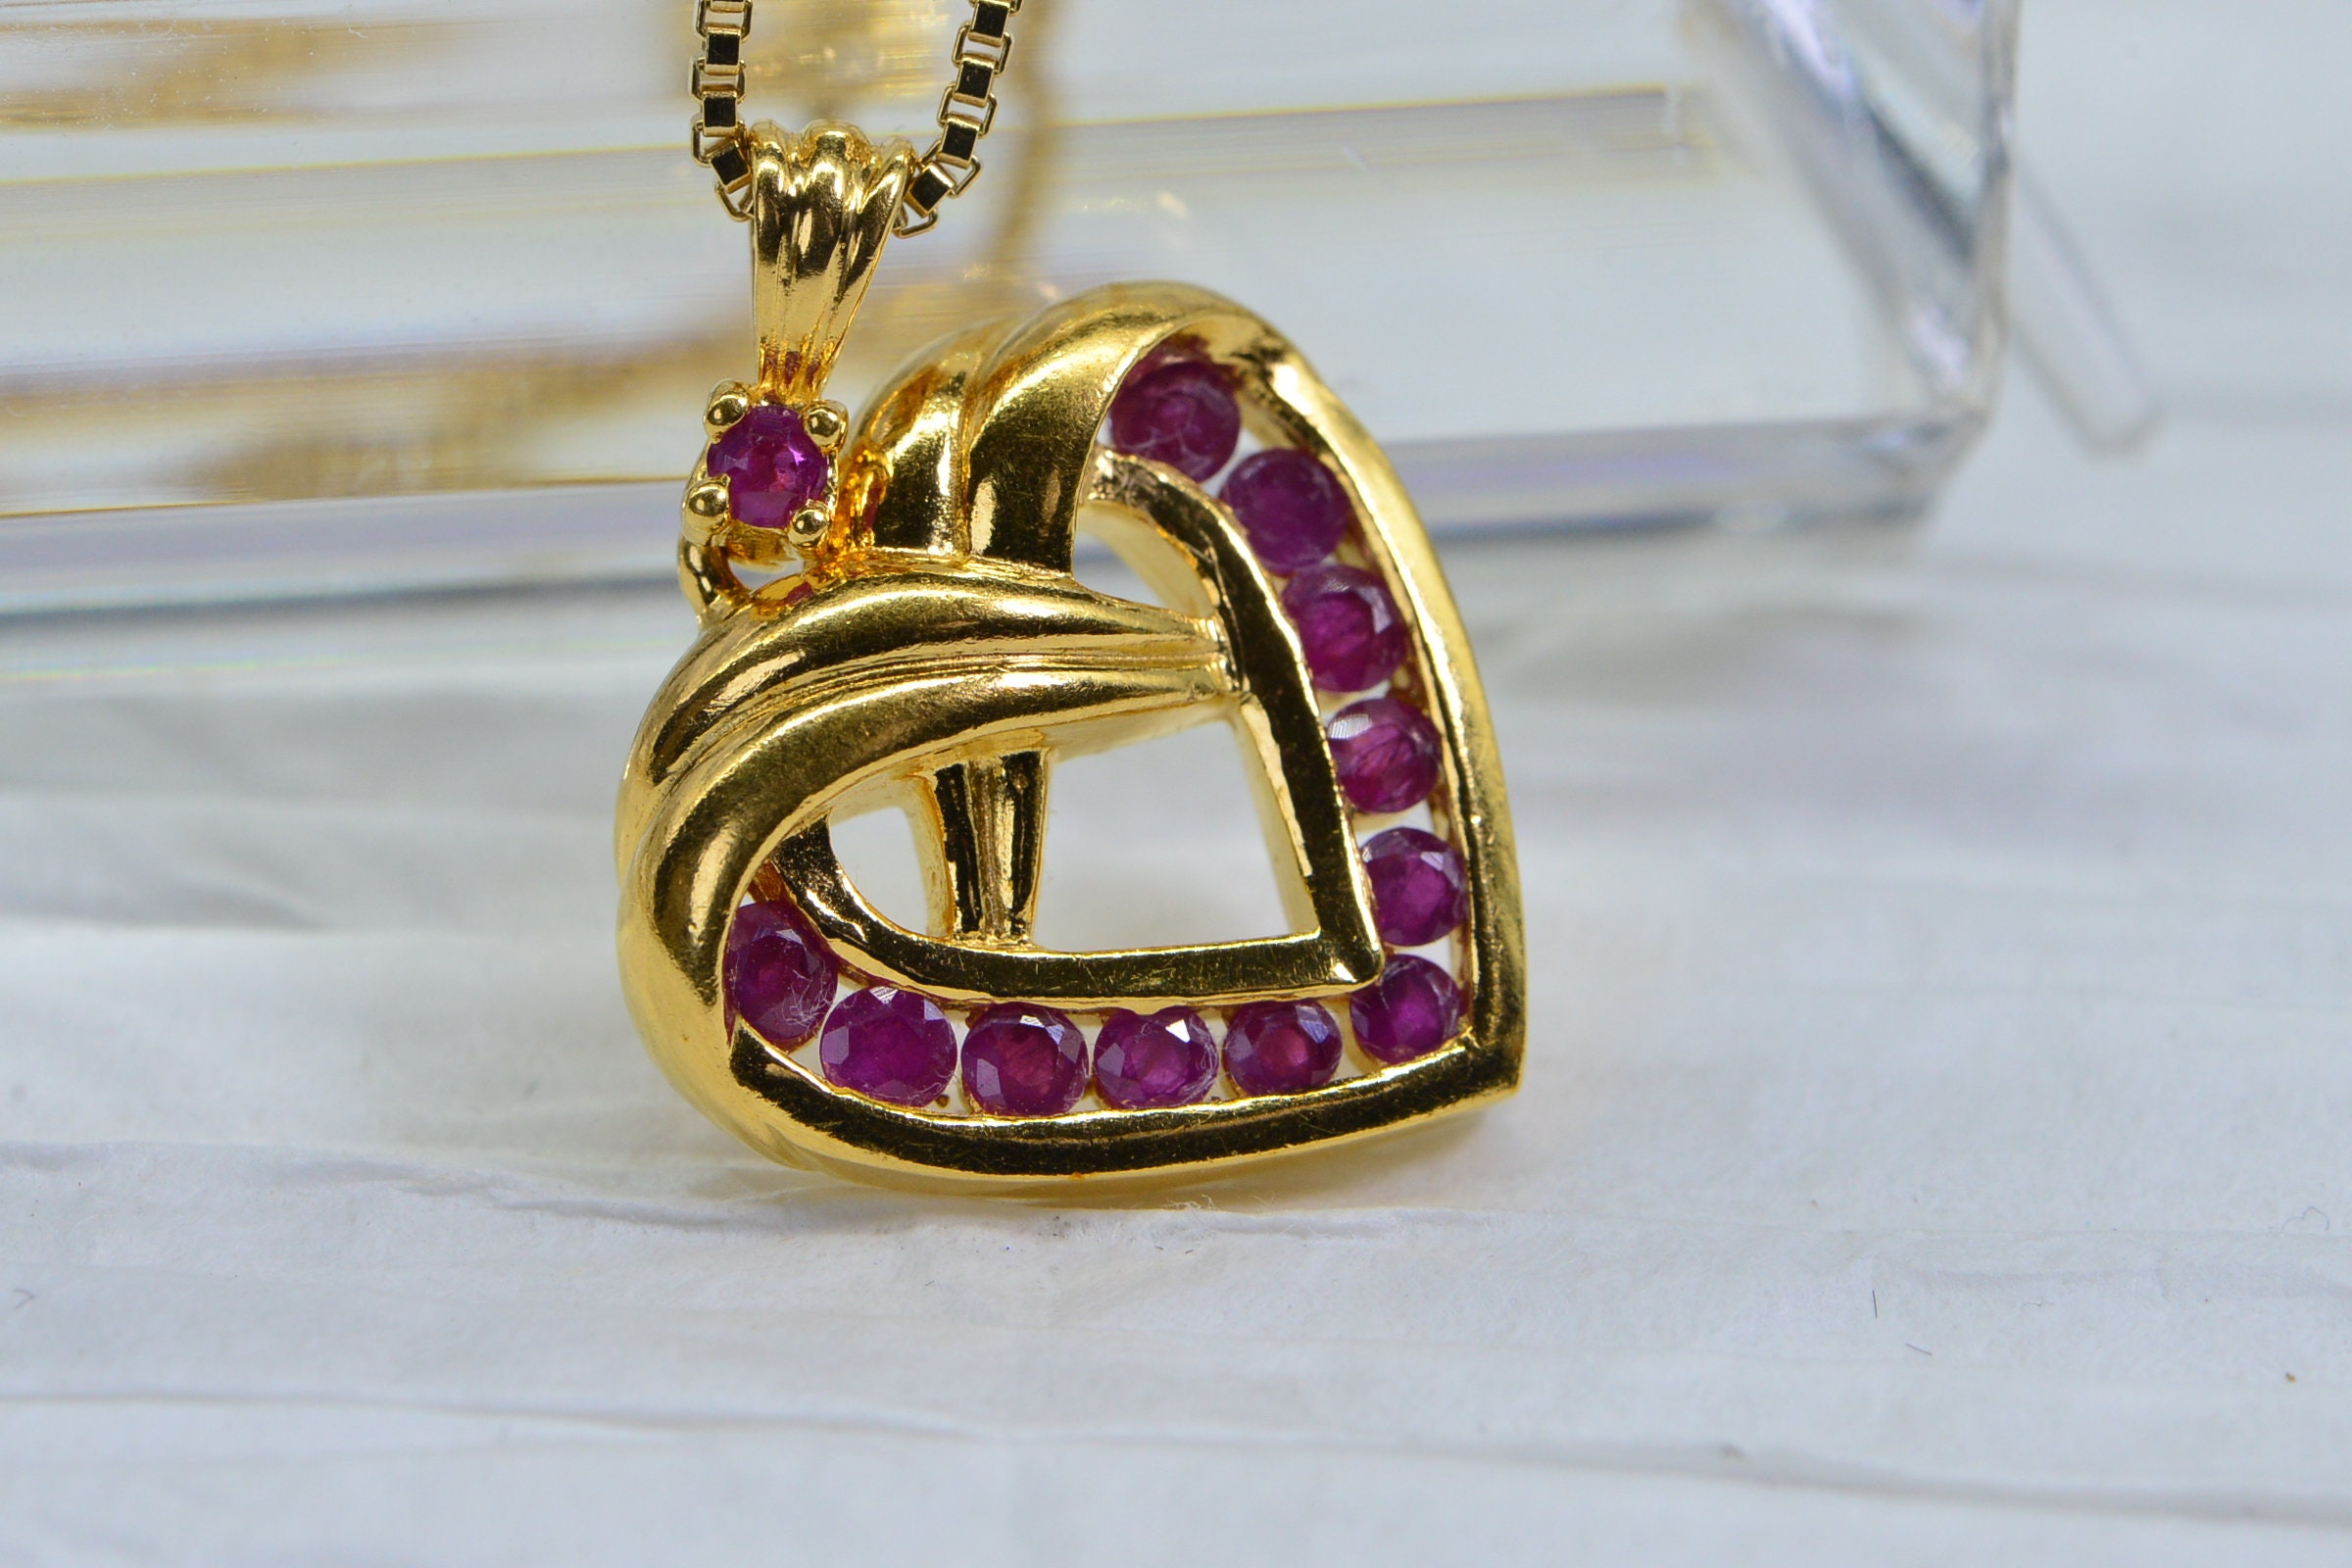 Chanel Heart Pendant 